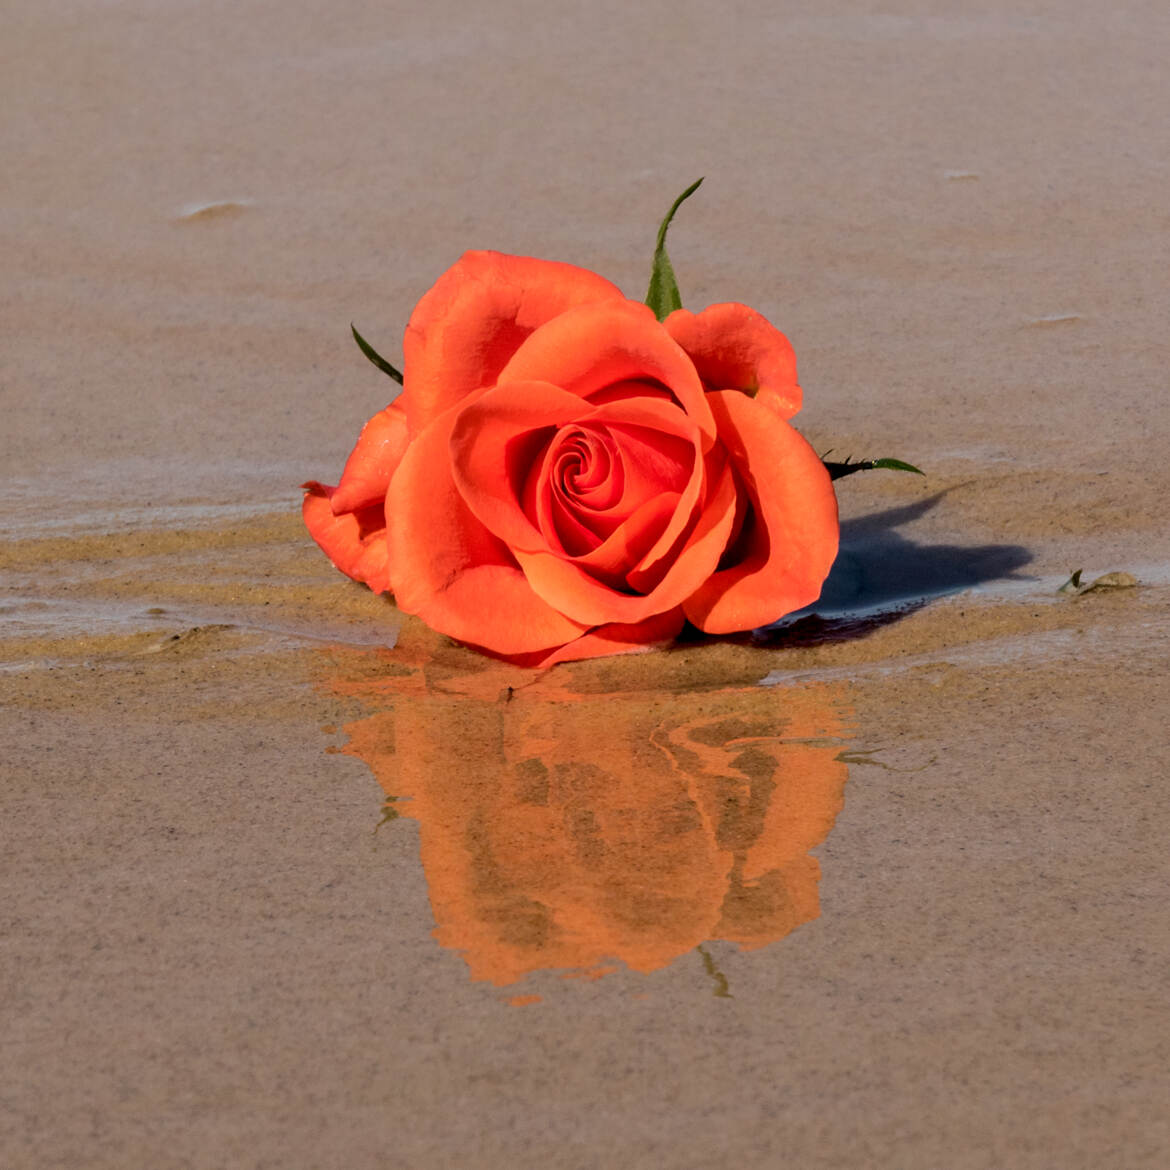 La rose sur la plage